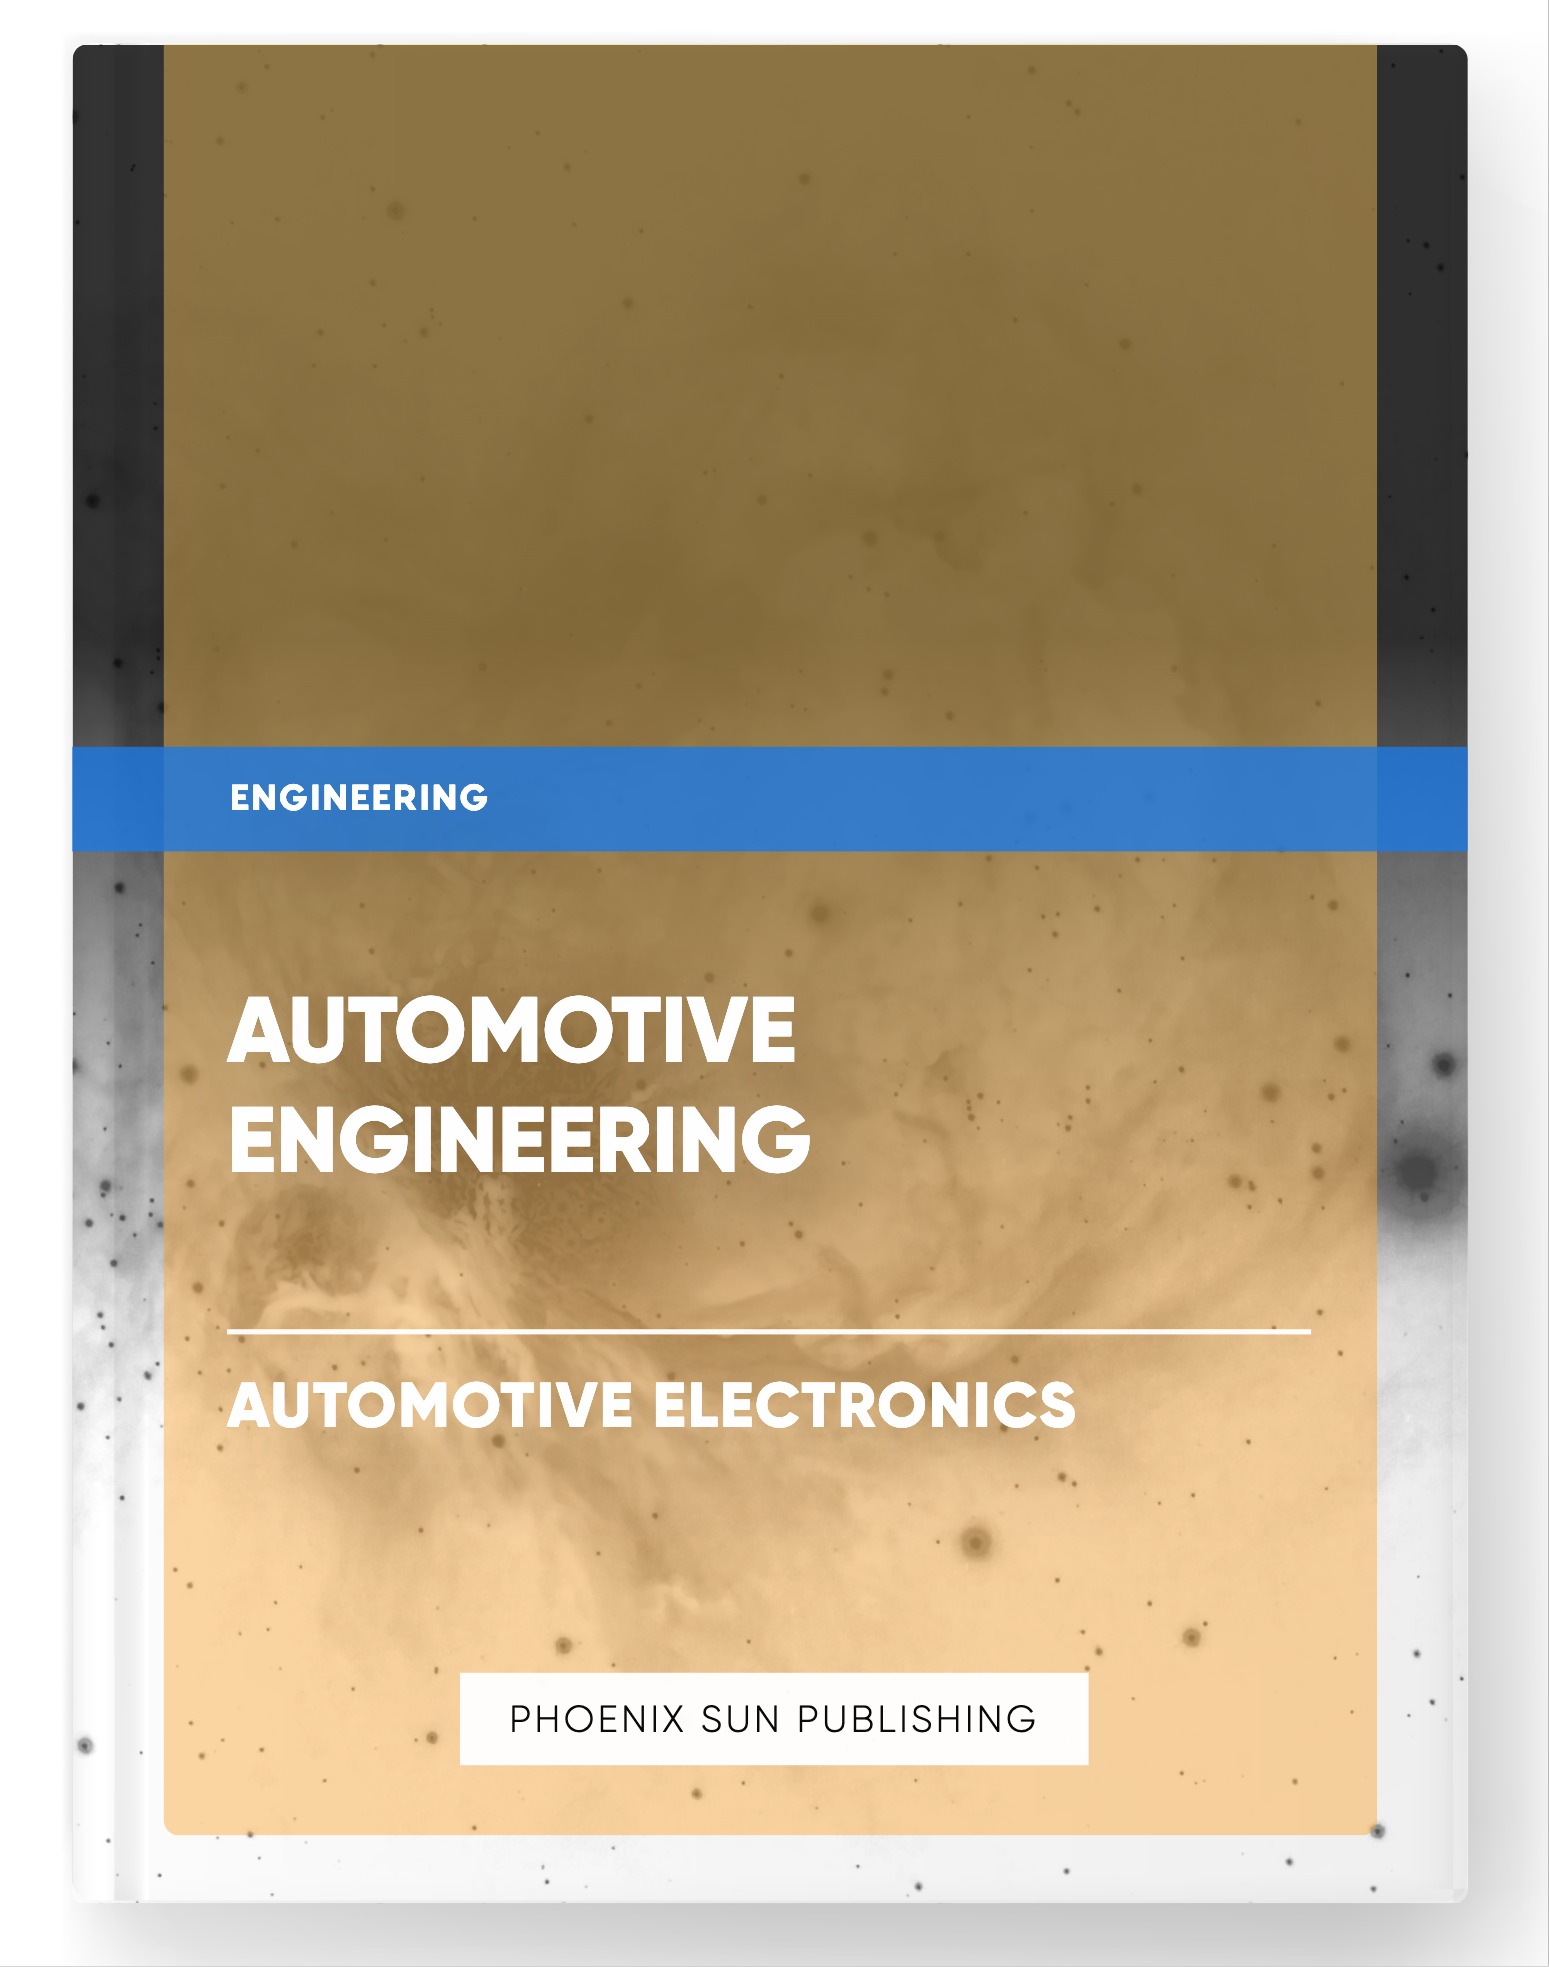 Automotive Engineering – Automotive Electronics